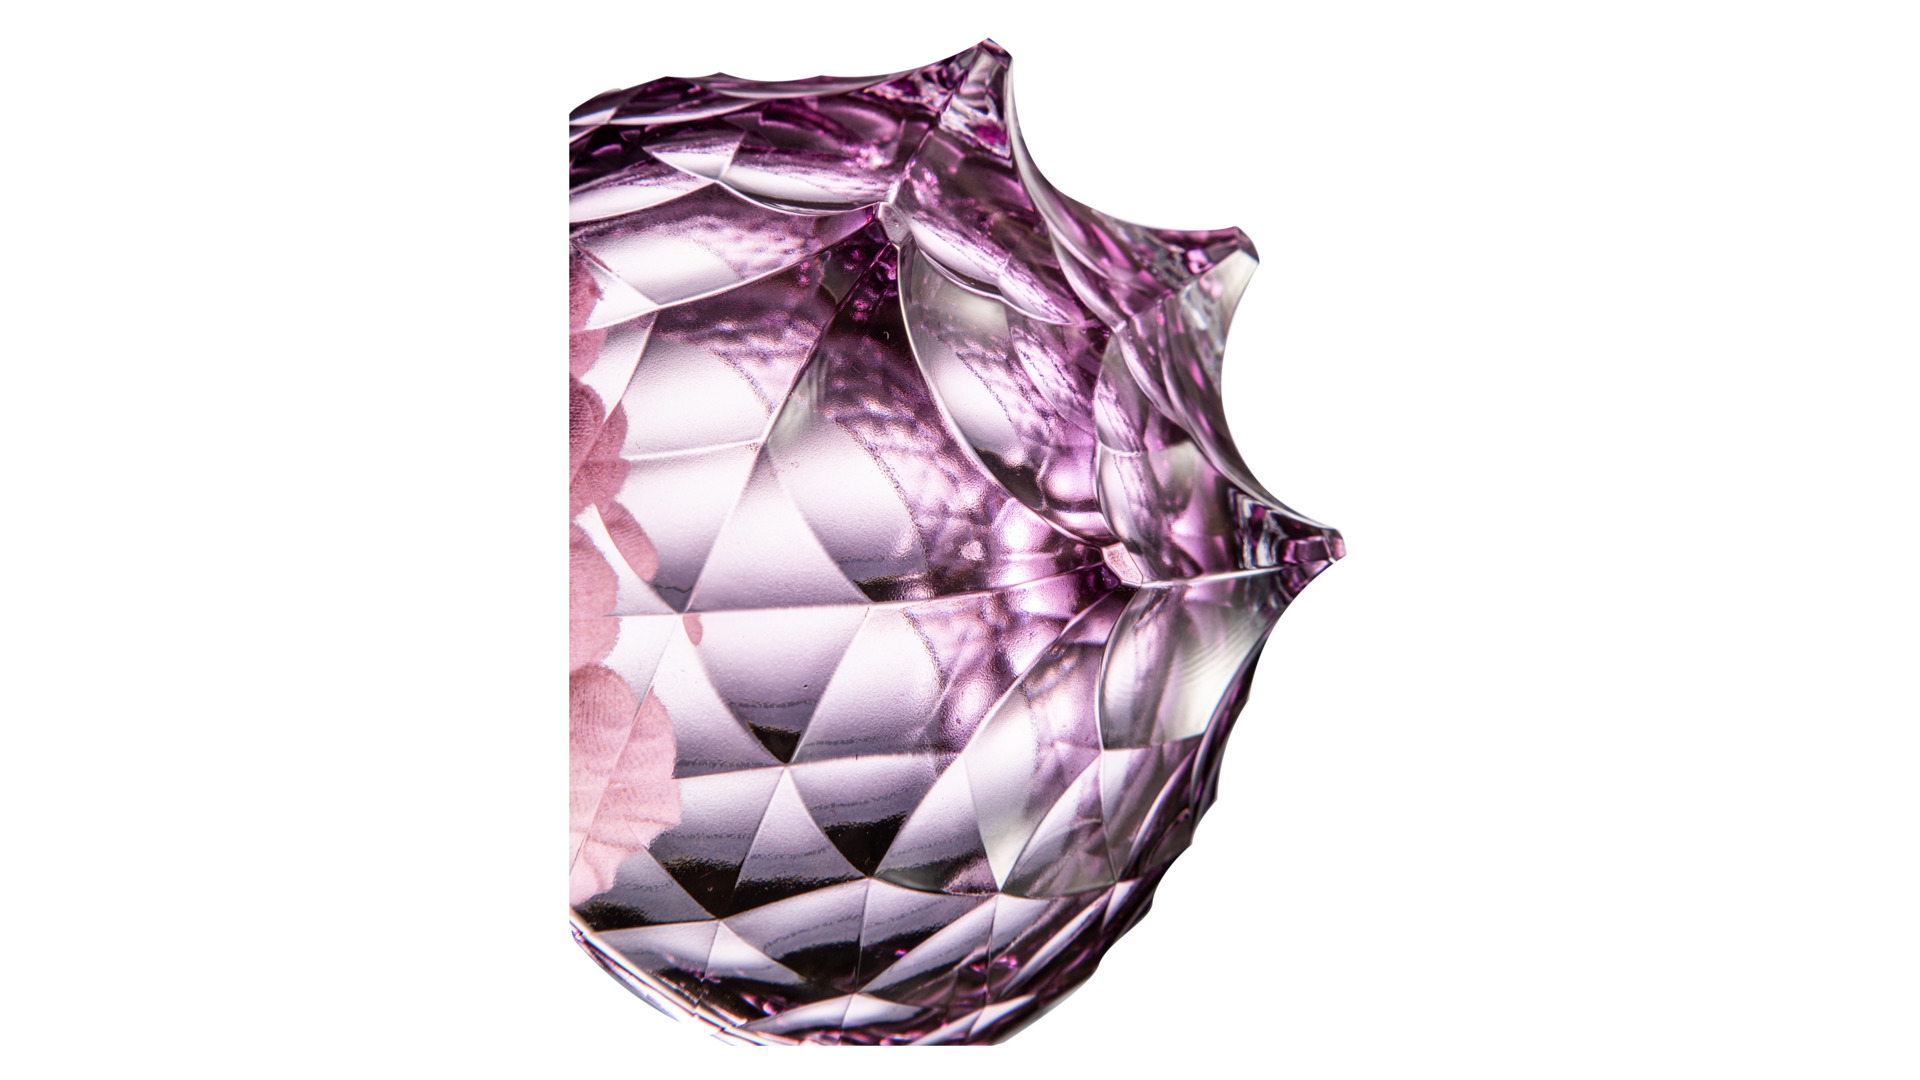 Конфетница с крышкой Cristal de Paris Каскад 15 см, h15 см, лиловая, ручка сатиновый цветок